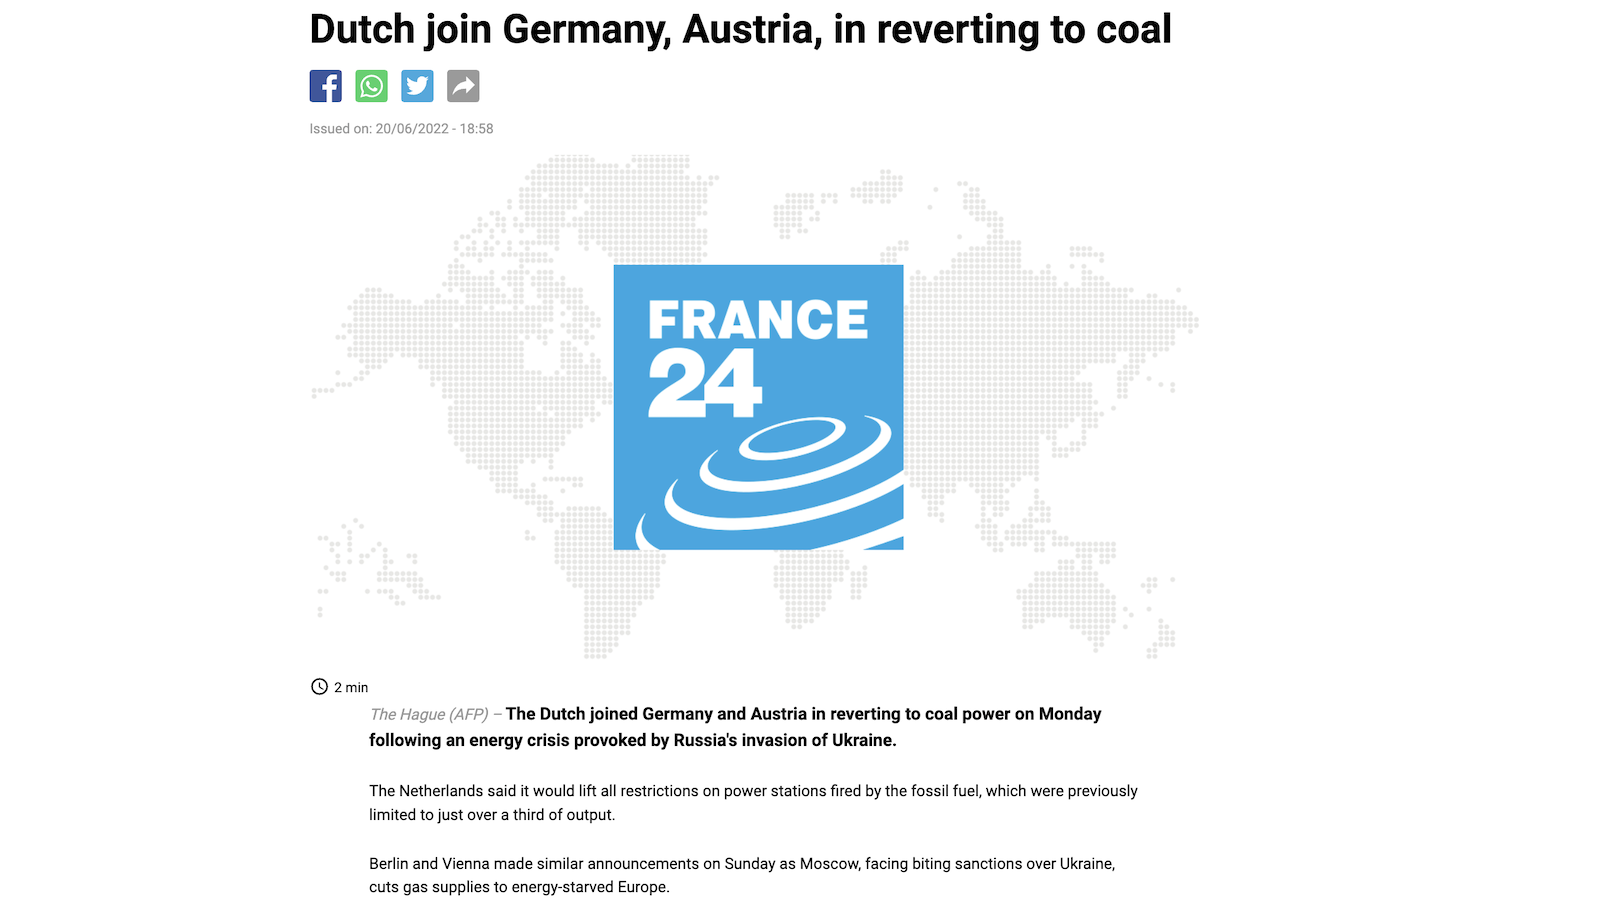 EU coal revival